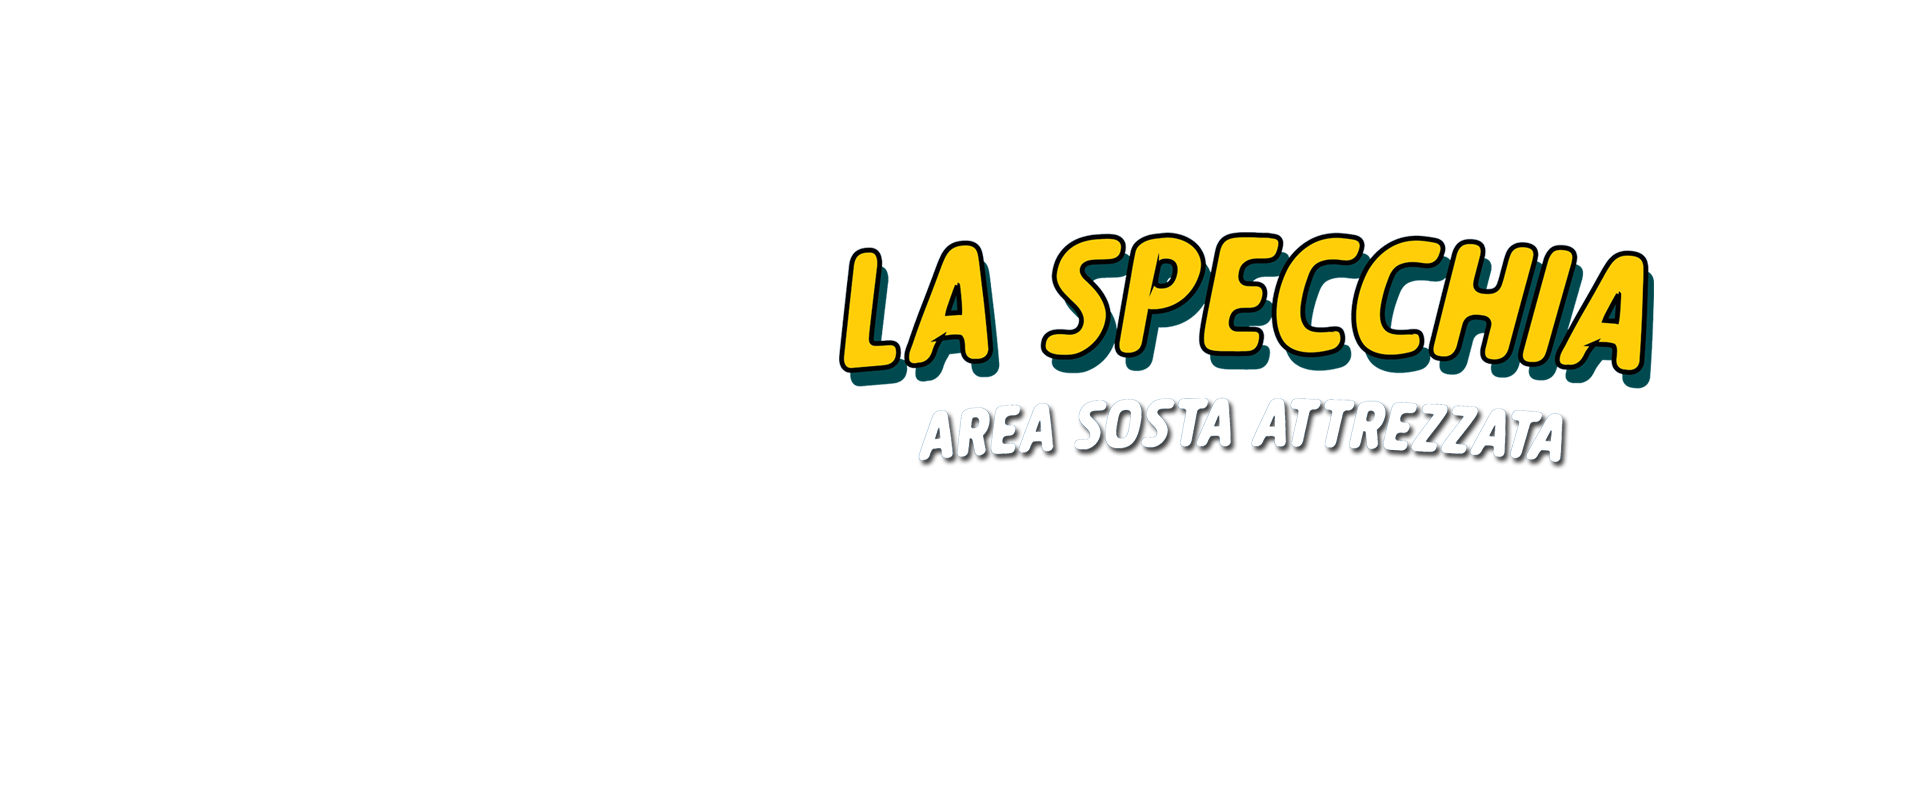 La Specchia - Area sosta attrezzata - Salento - Puglia - Taranto - Manduria - San Pietro in Bevagna